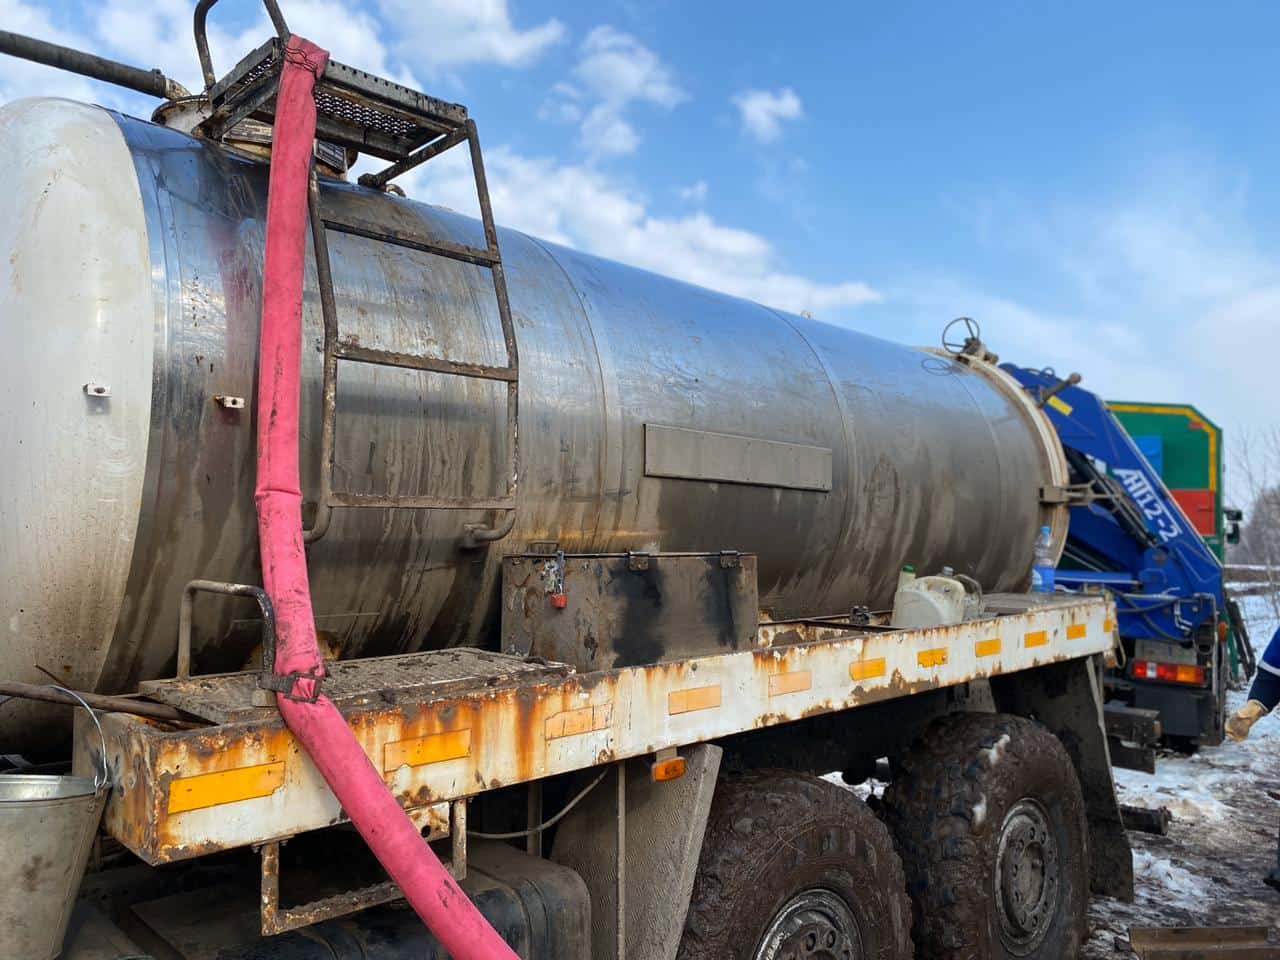 Следователями Находкинского ЛО МВД России на транспорте направлено в суд уголовное дело по факту хищения топлива на траулере